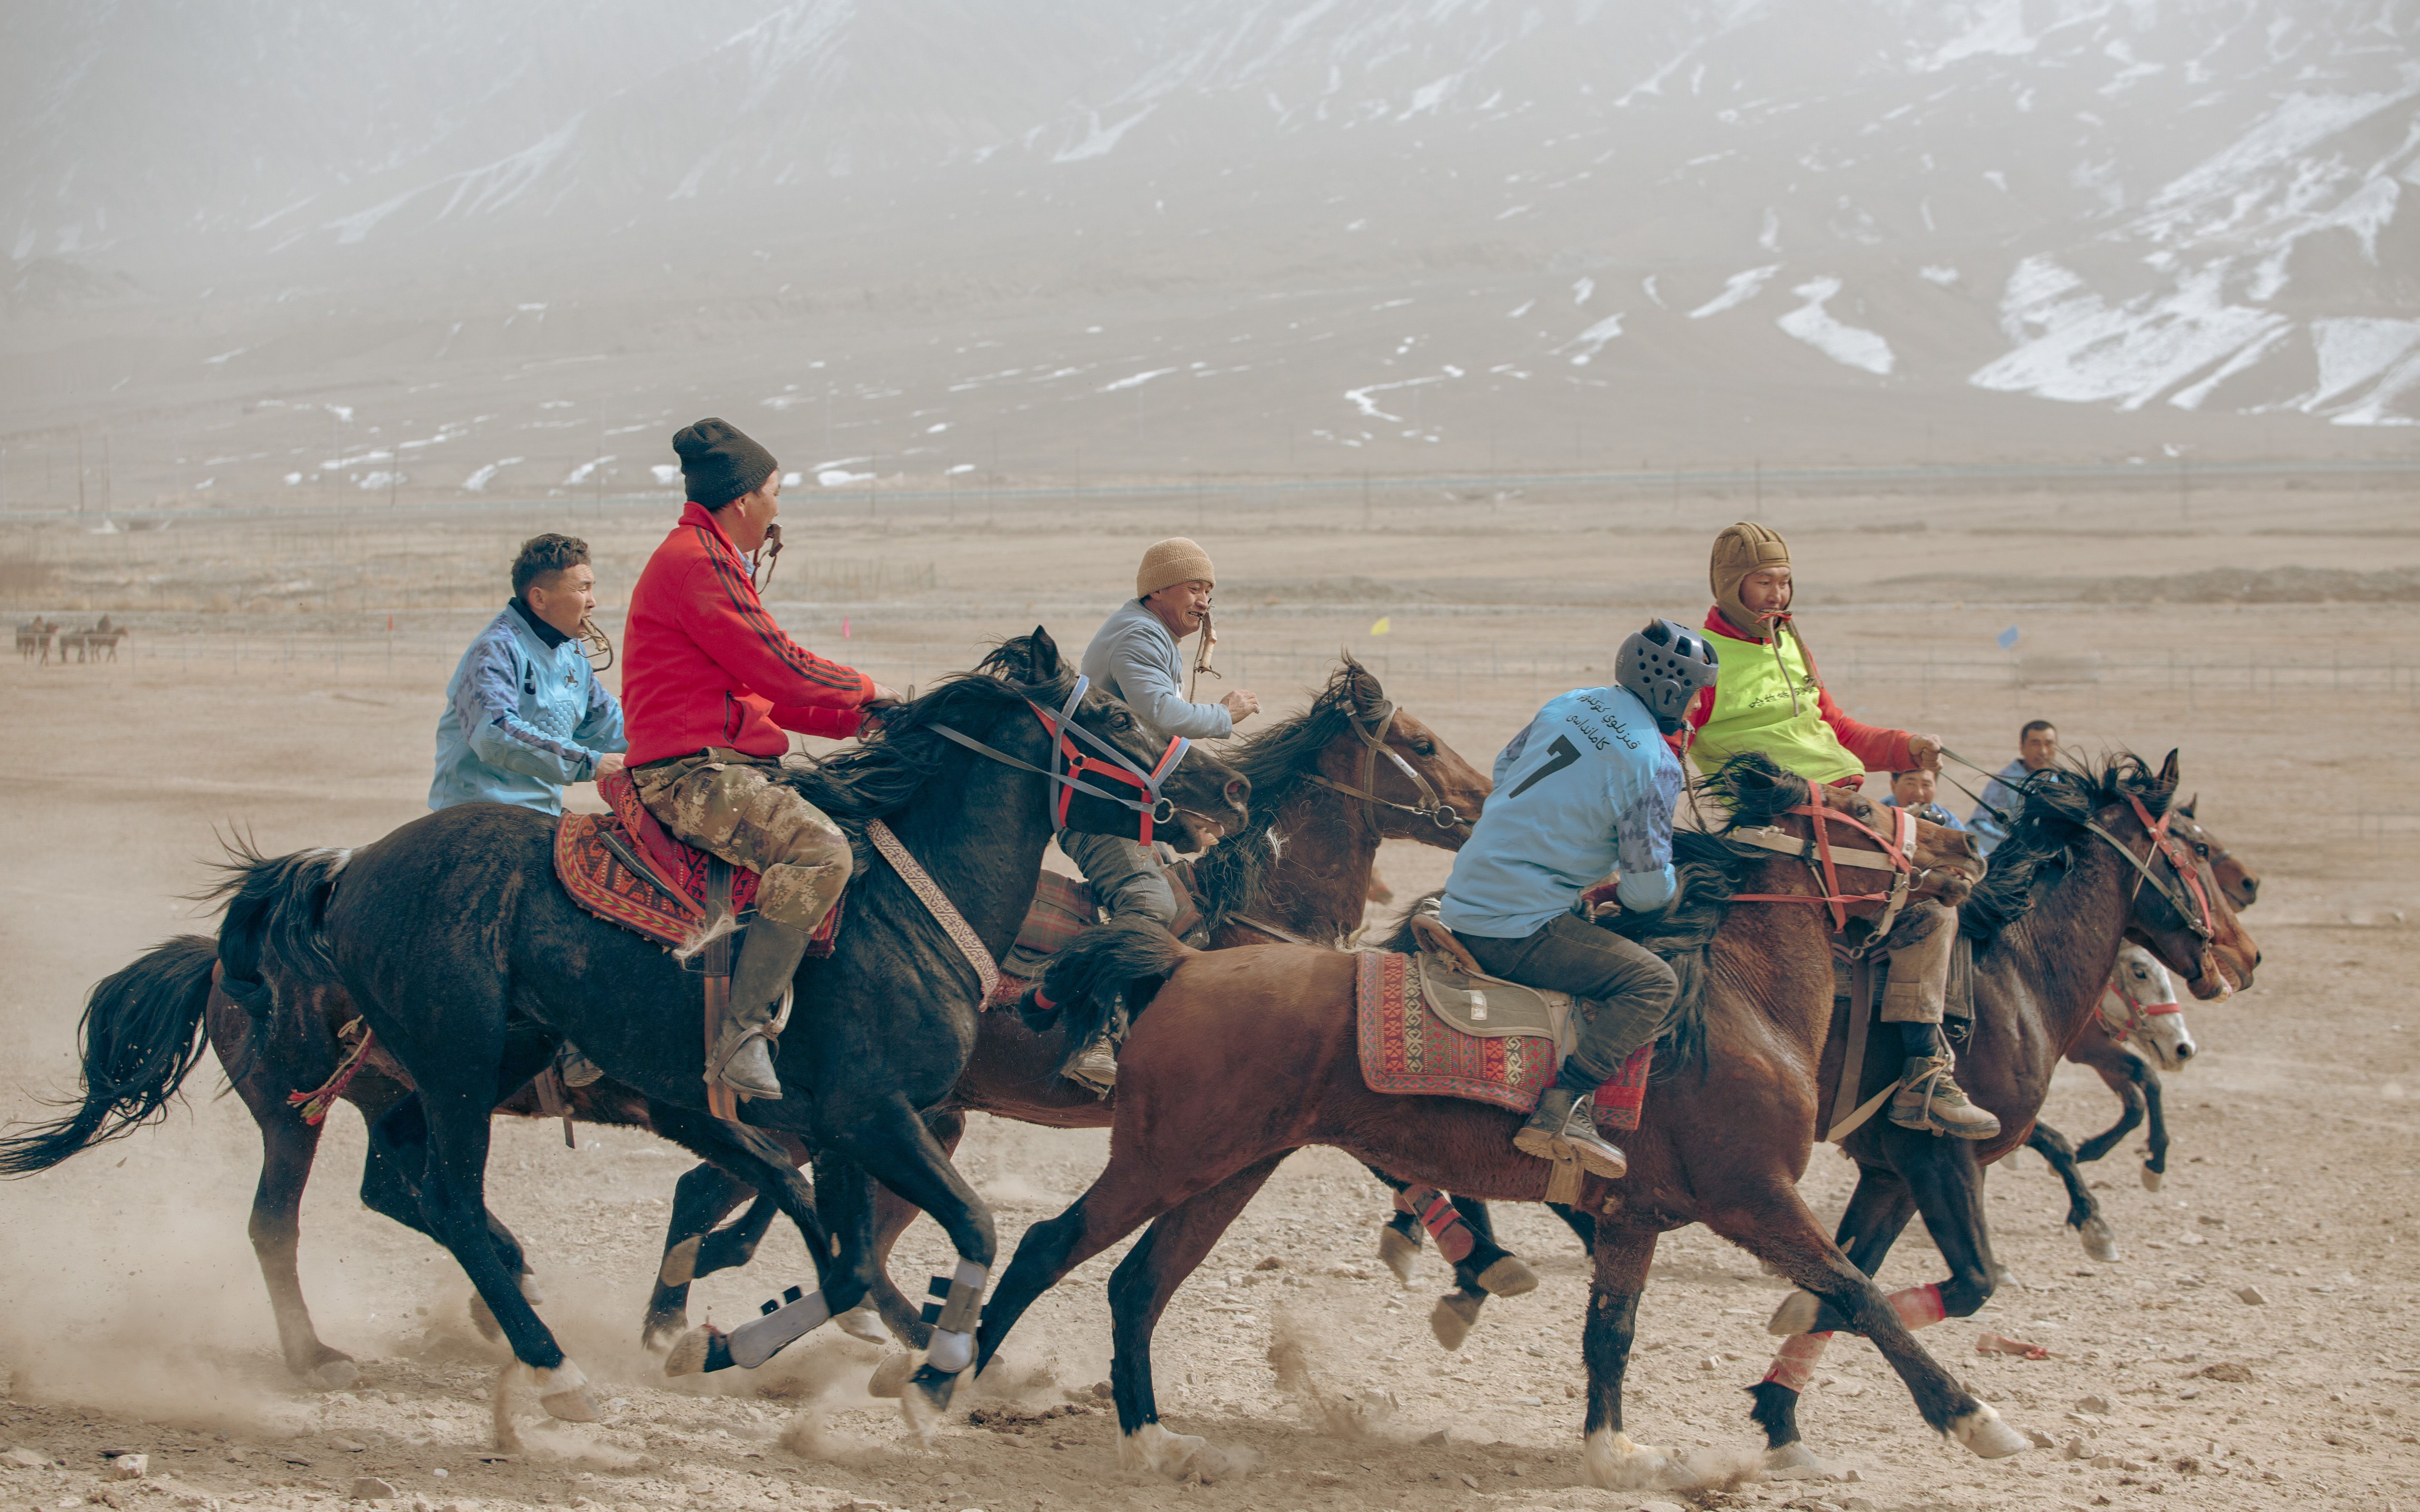 在中国的最西边,见证一场景柯尔克孜族的叼羊比赛